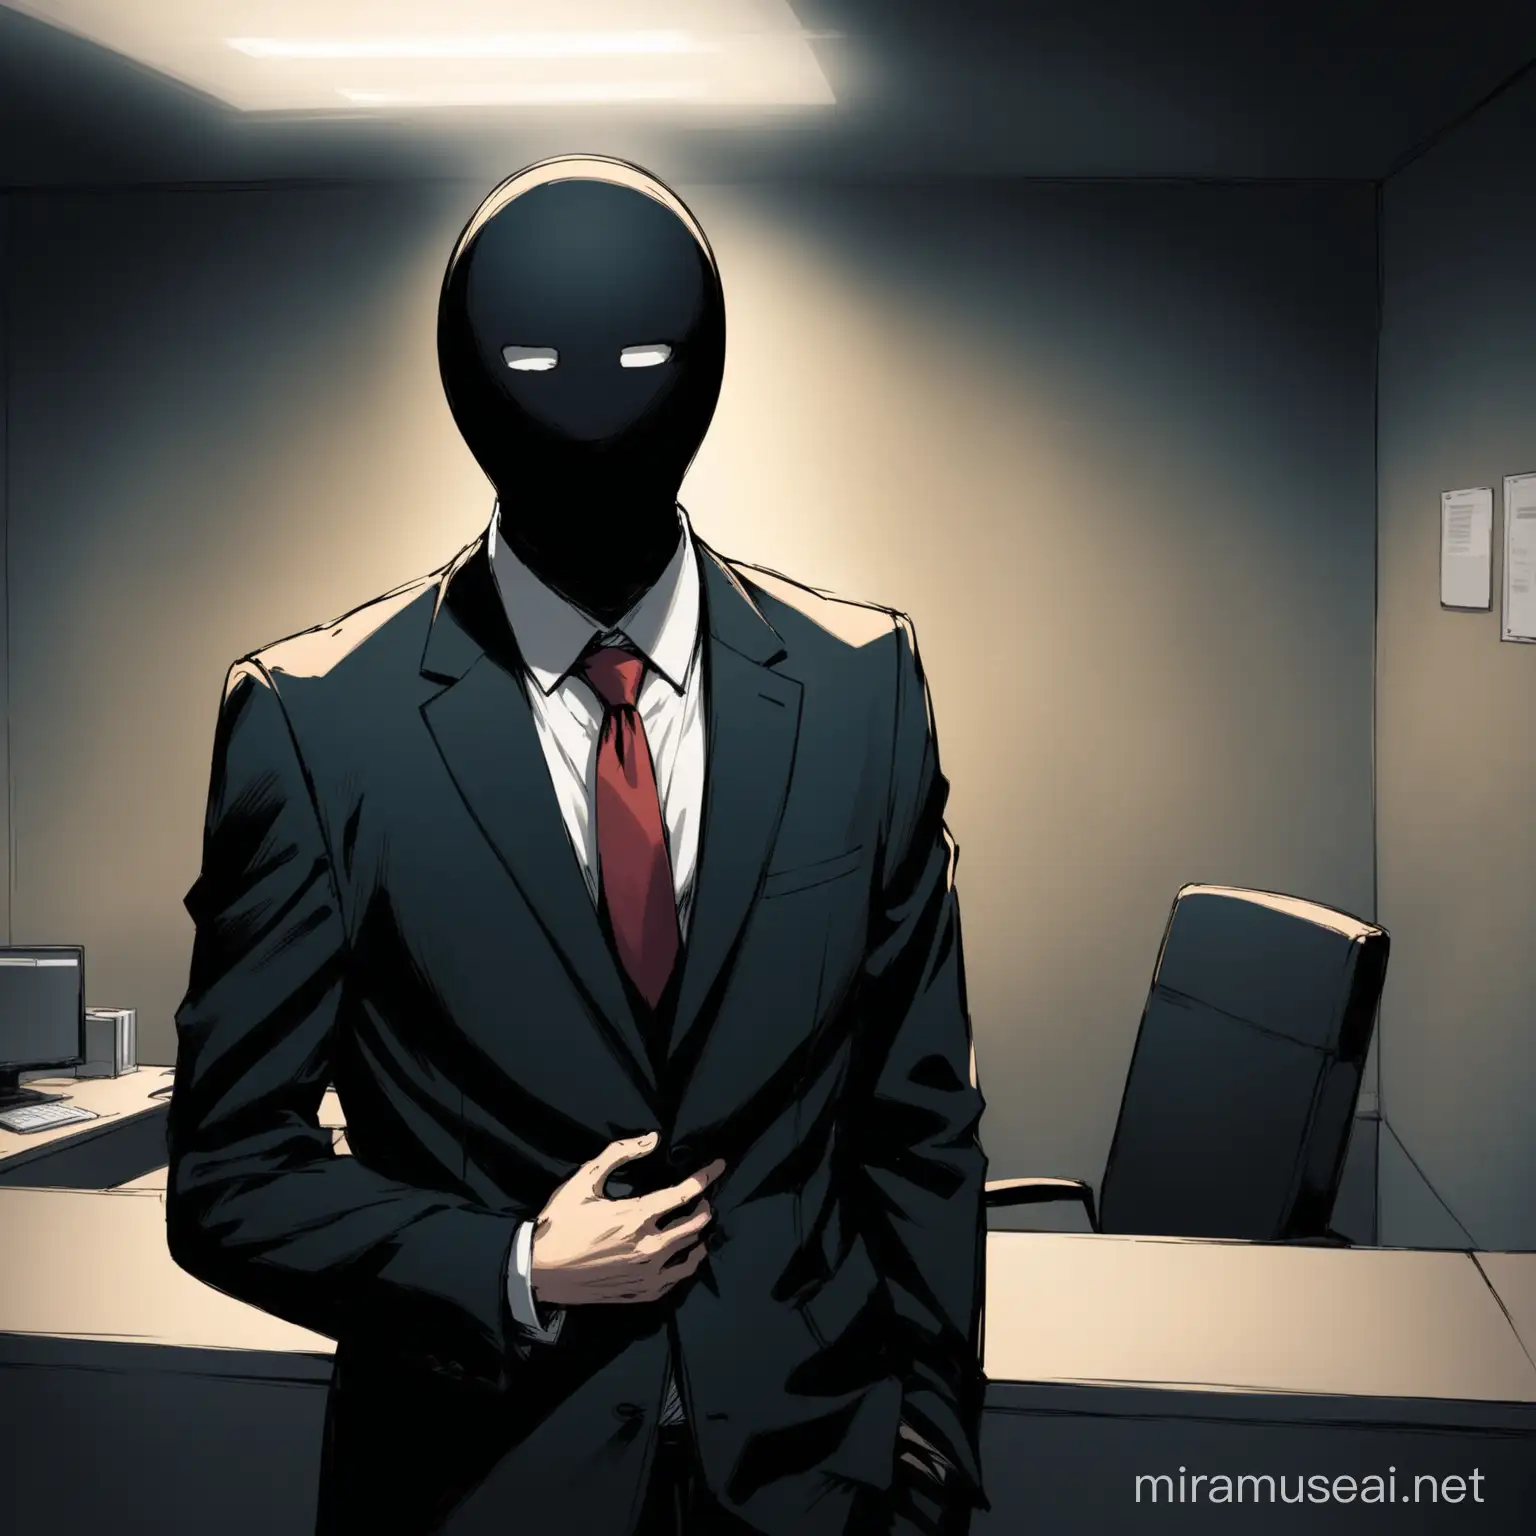 Persona sin rostro, con traje en una oficina subterranea con una noca en el estomago